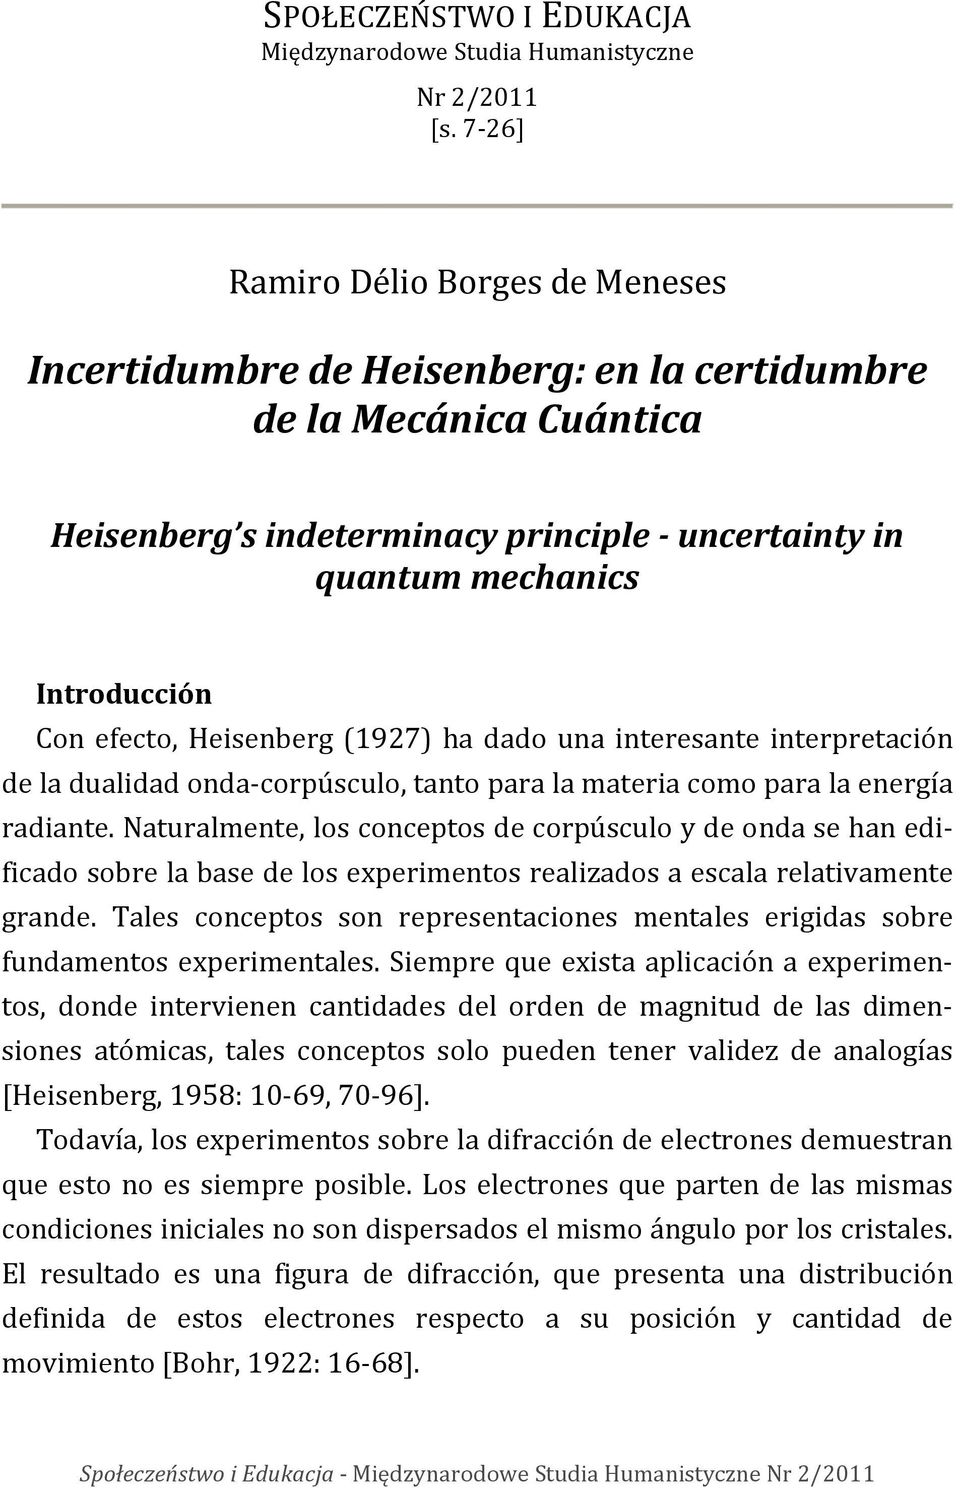 efecto, Heisenberg (1927) ha dado una interesante interpretación de la dualidad onda-corpúsculo, tanto para la materia como para la energía radiante.